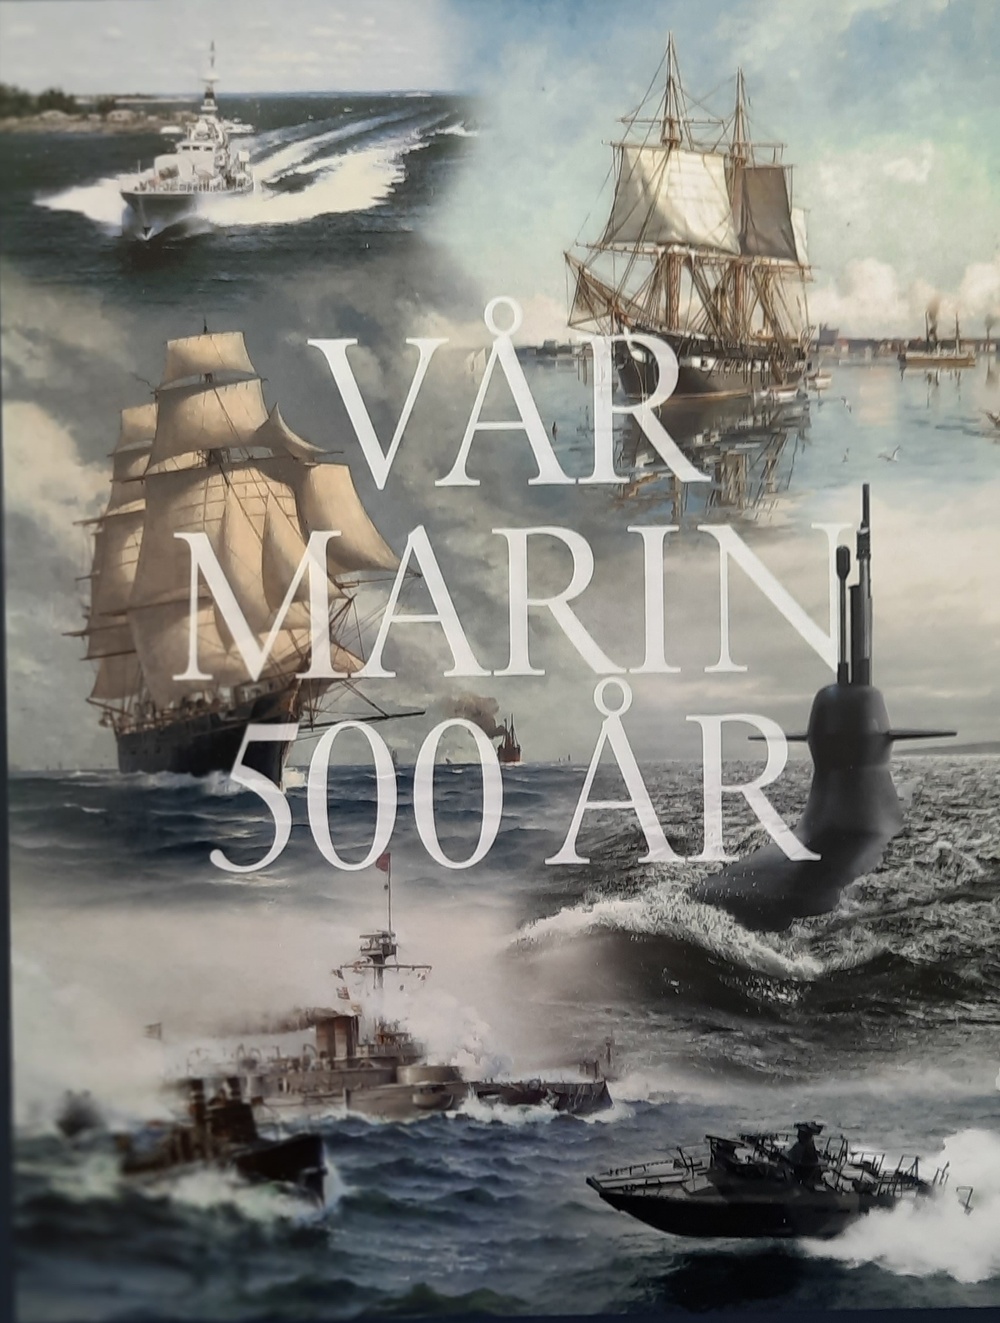 Claes-Göran Dahl, Örlogskapten emeritus, och redaktör för bokverket ”Vår marin 500 år", ger ett föredrag i Sävesalen den 19 april. Foto. Privat